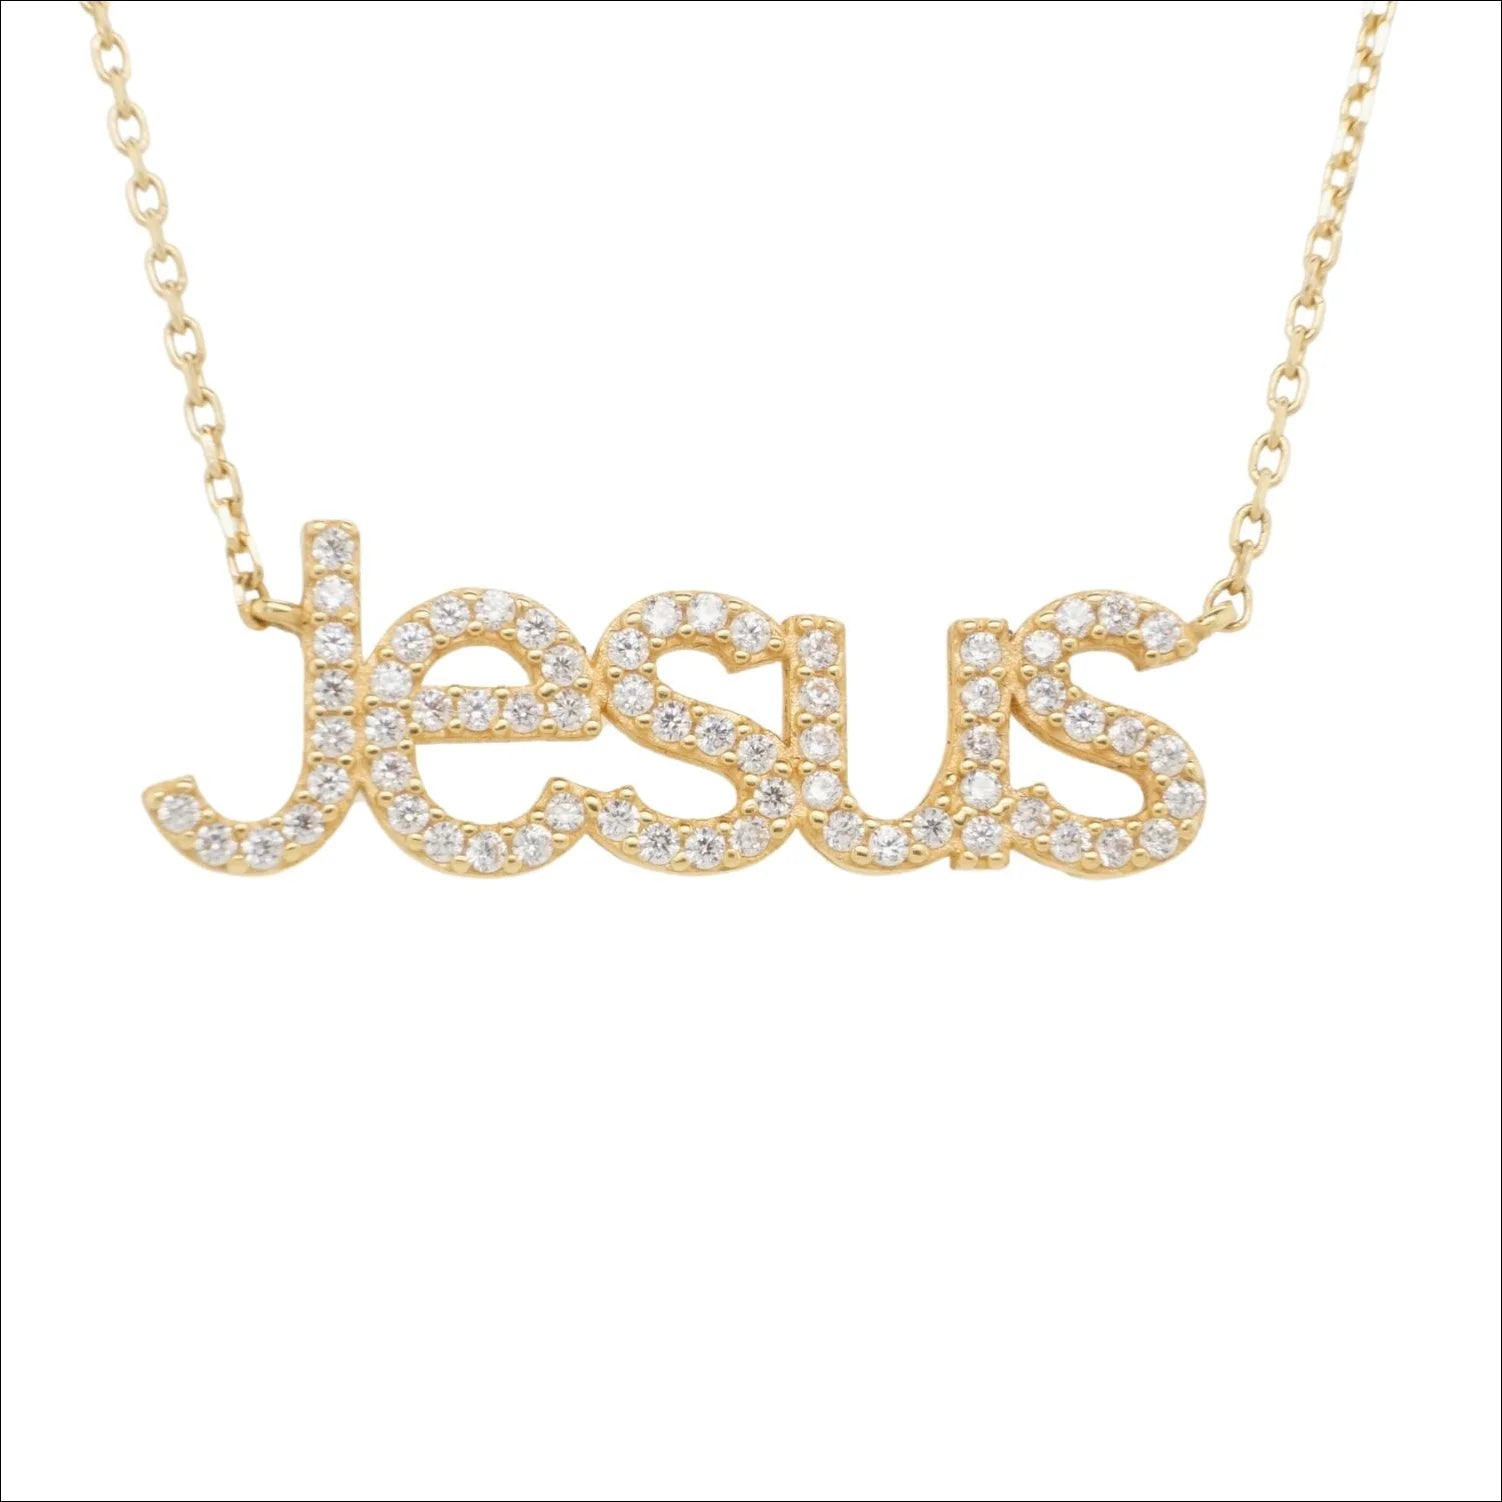 Jesus Pendant Gold Necklace - Art Gold Craftsmanship | Home